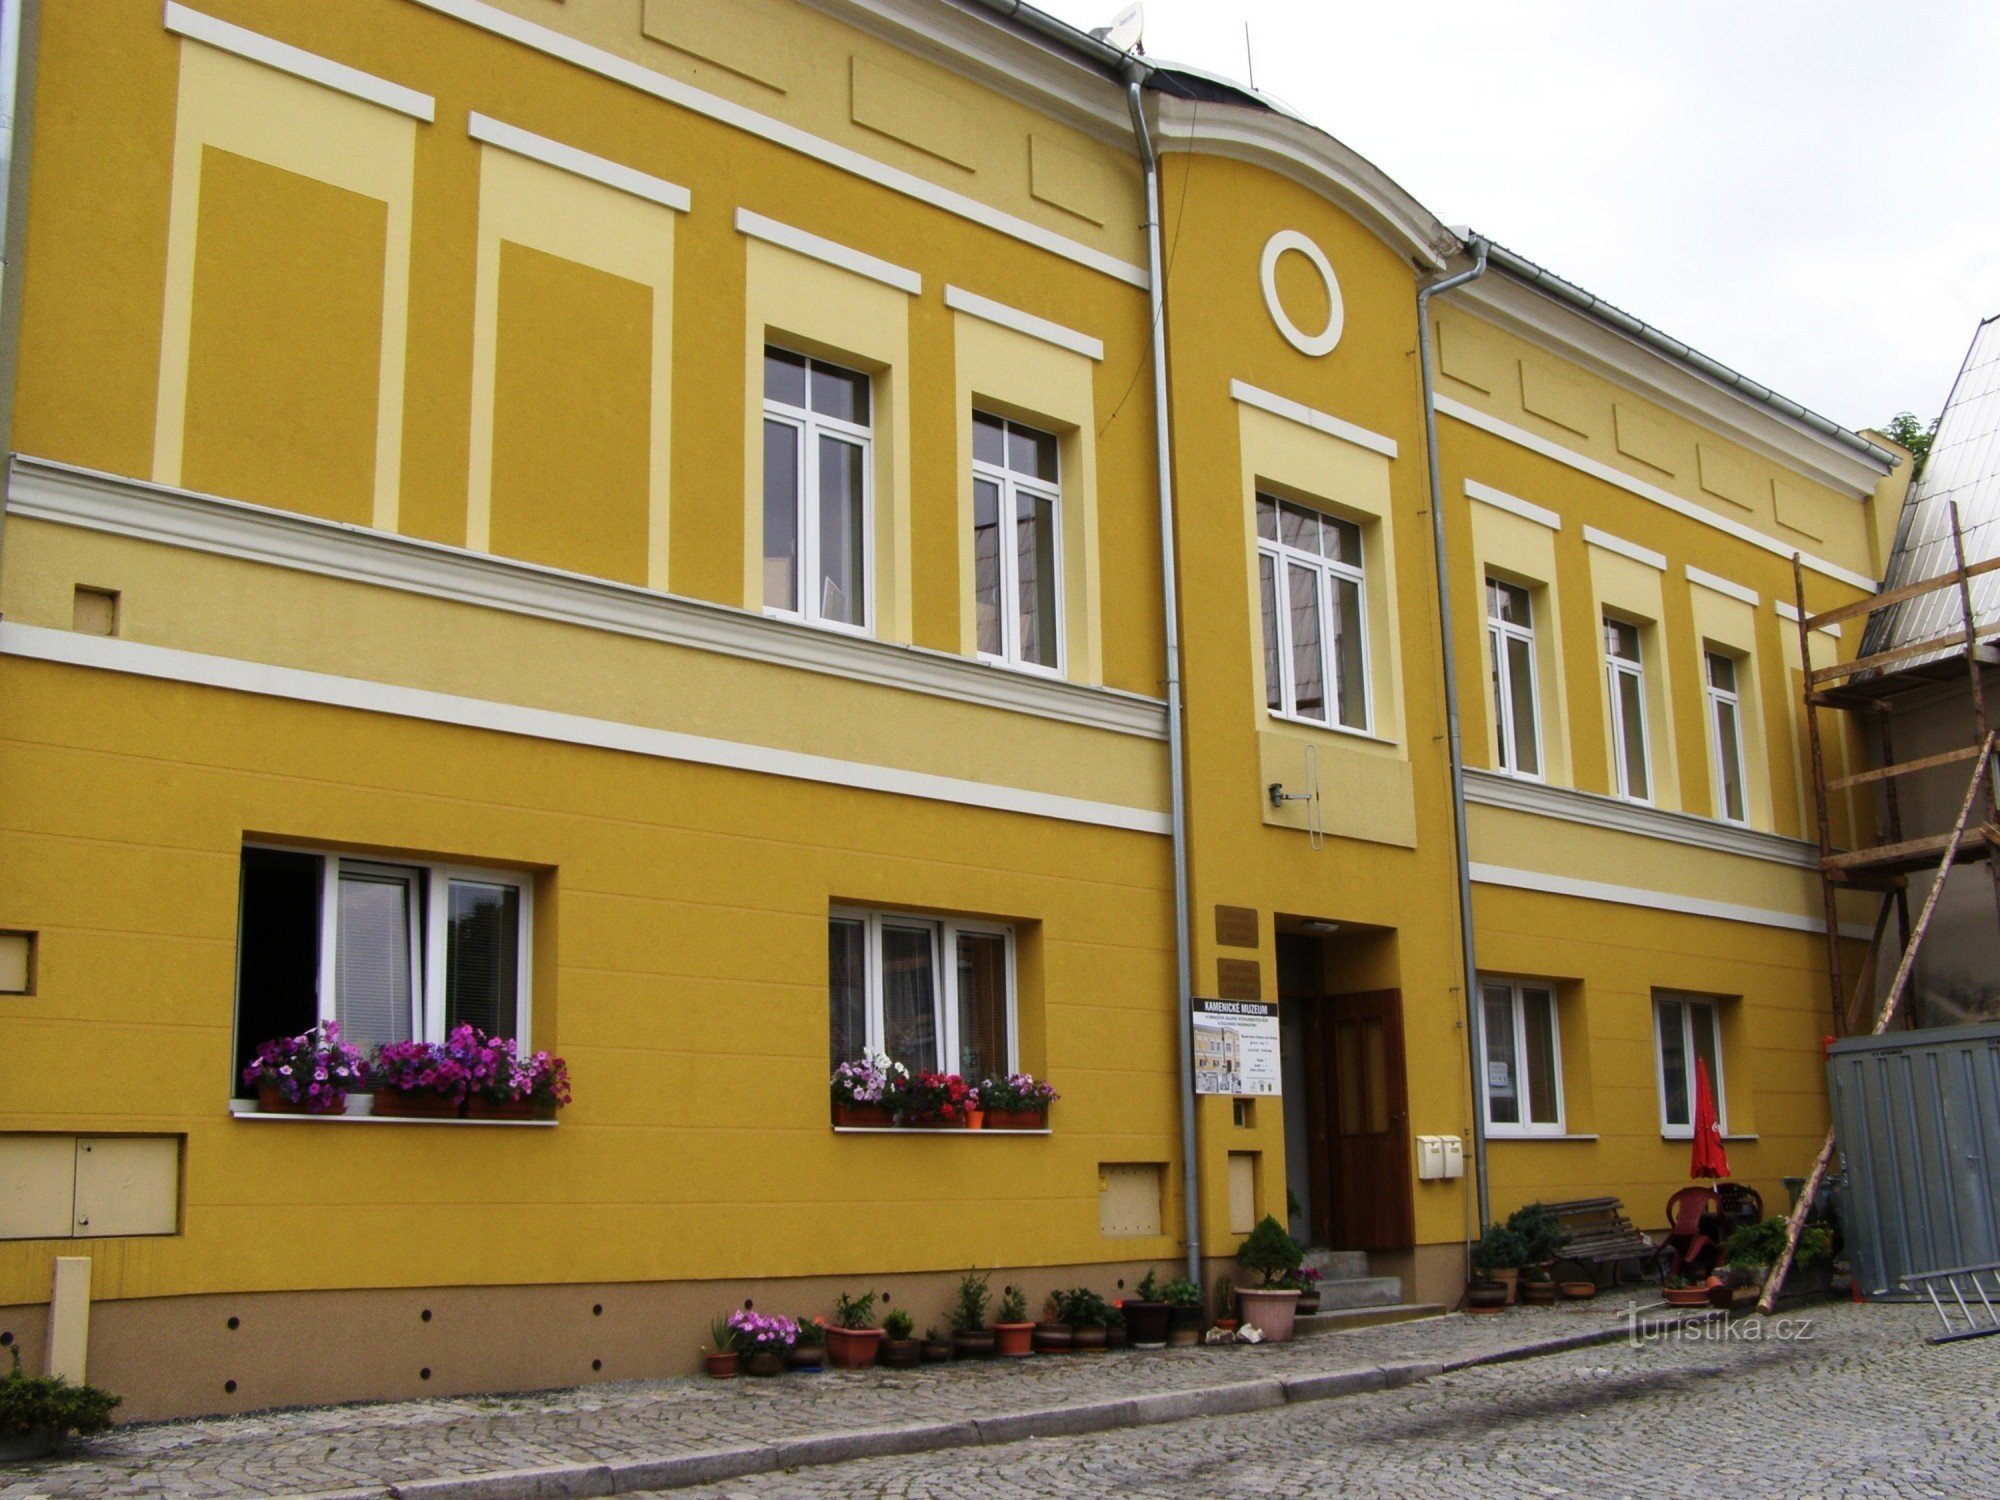 Žulová - Kamenické museum, Tourist information center, library